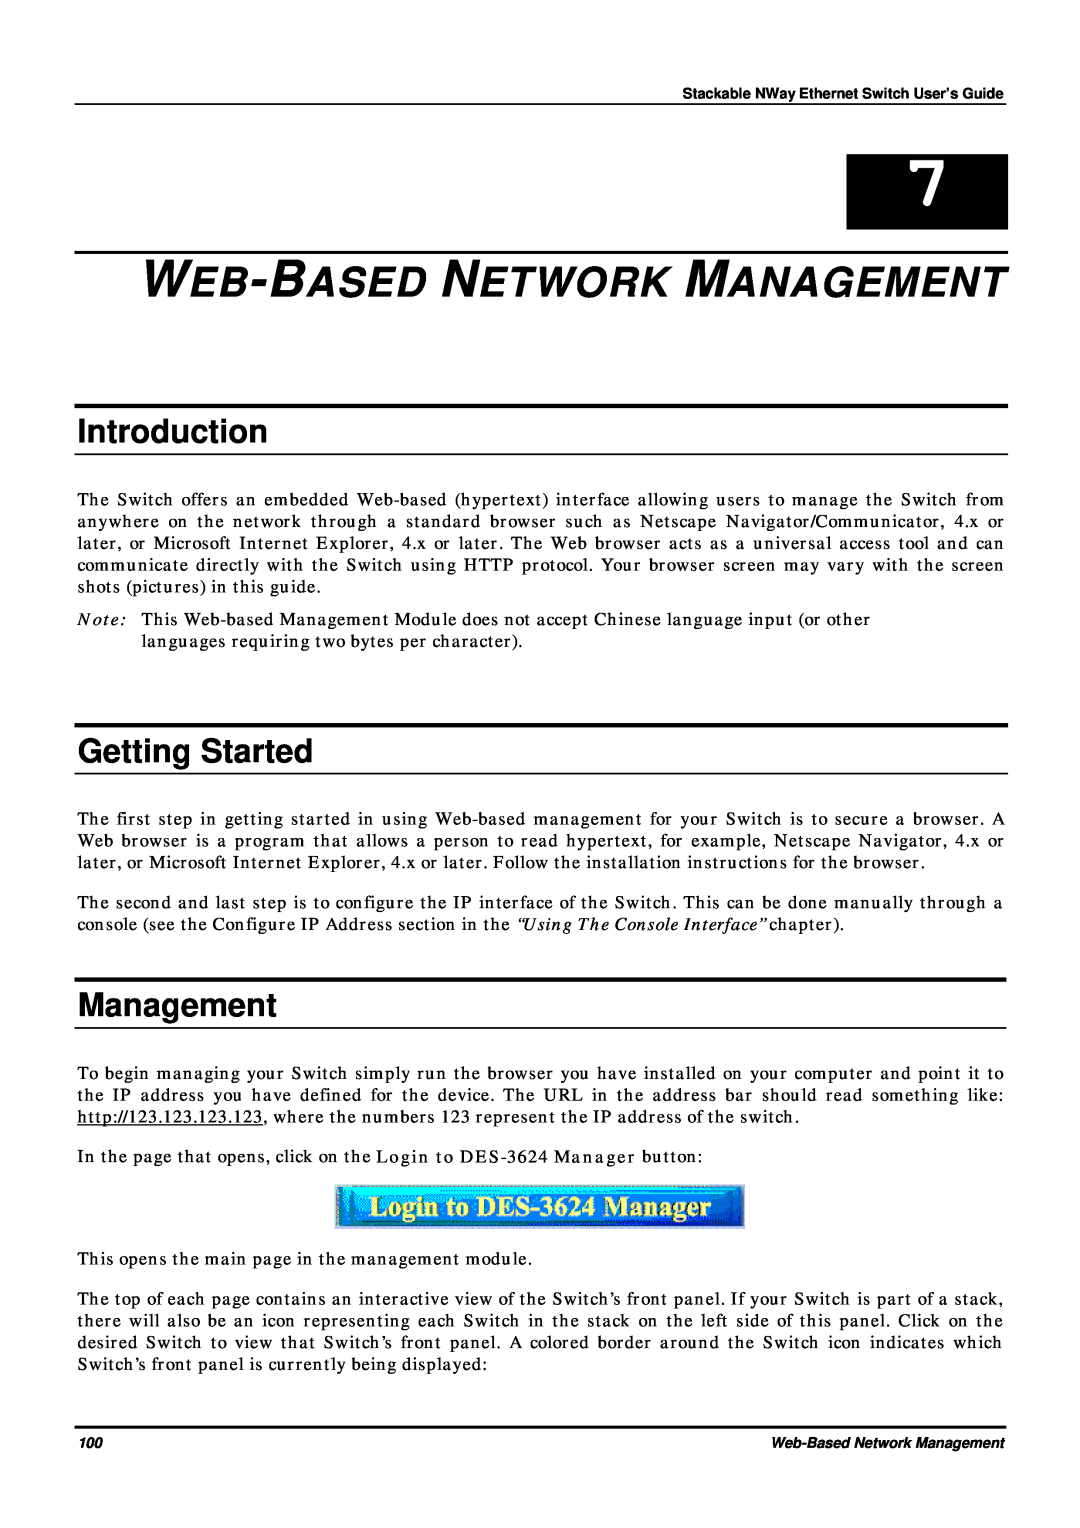 D-Link DES-3624 manual Web-Based Network Management, Introduction, Getting Started 